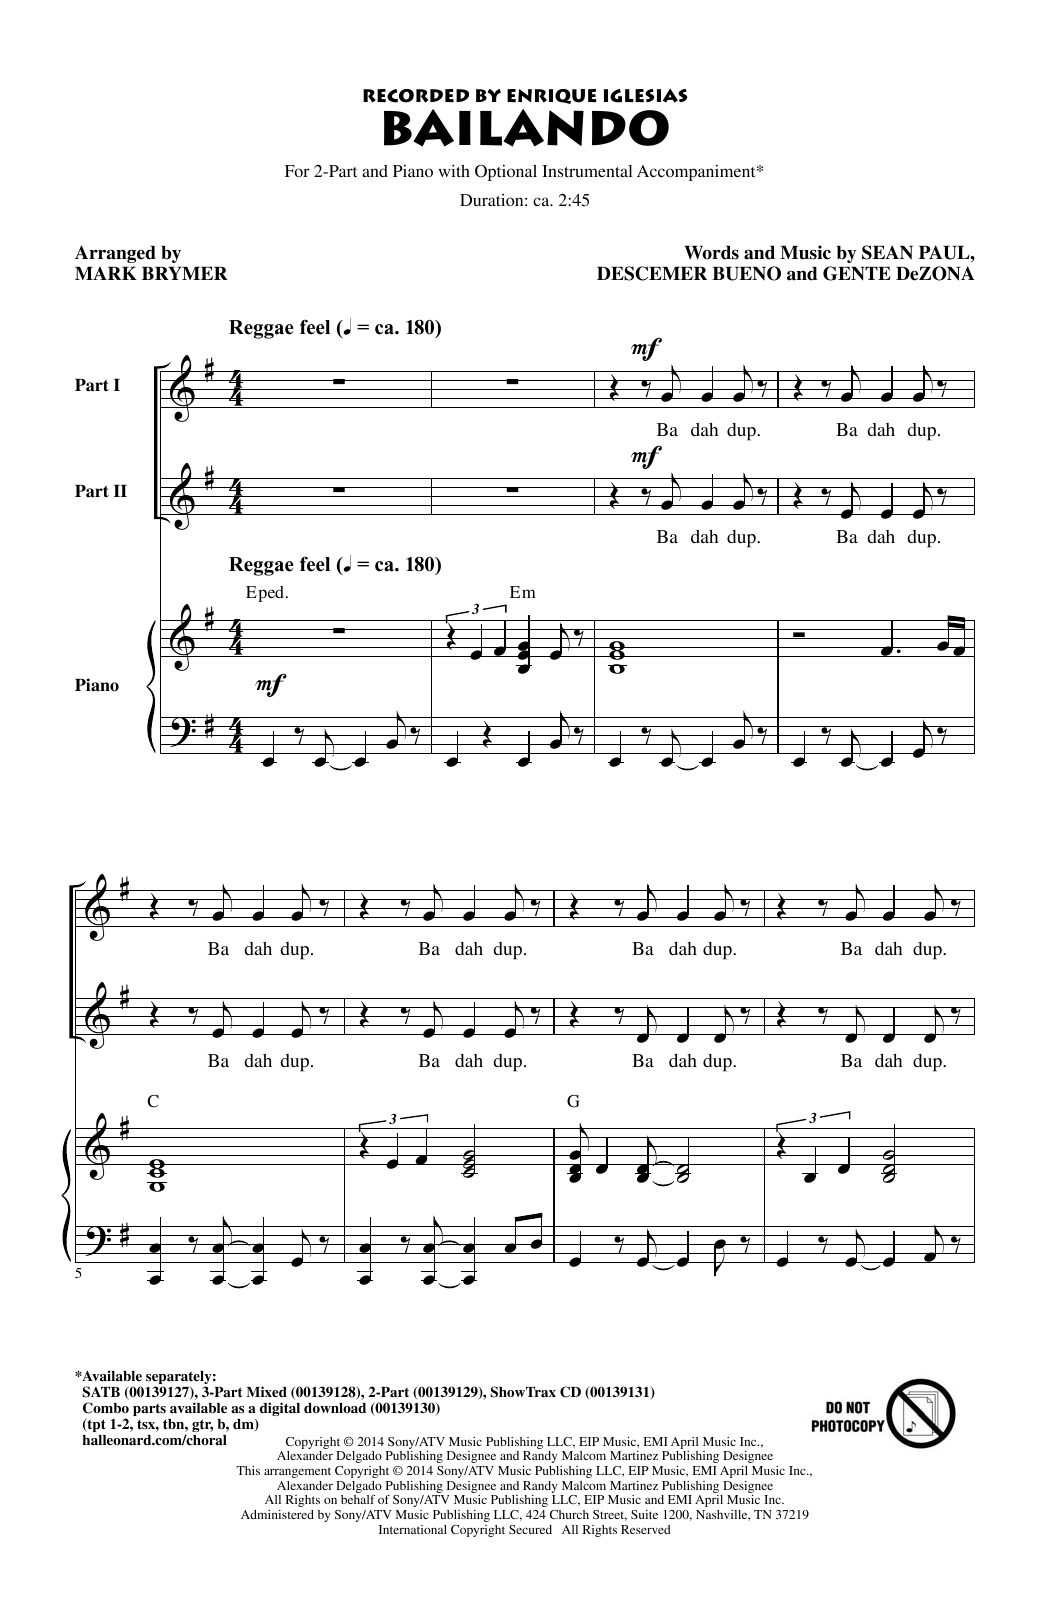 Enrique Iglesias Featuring Descemer Bueno and Gente de Zona Bailando (arr. Mark Brymer) Sheet Music Notes & Chords for 3-Part Mixed Choir - Download or Print PDF